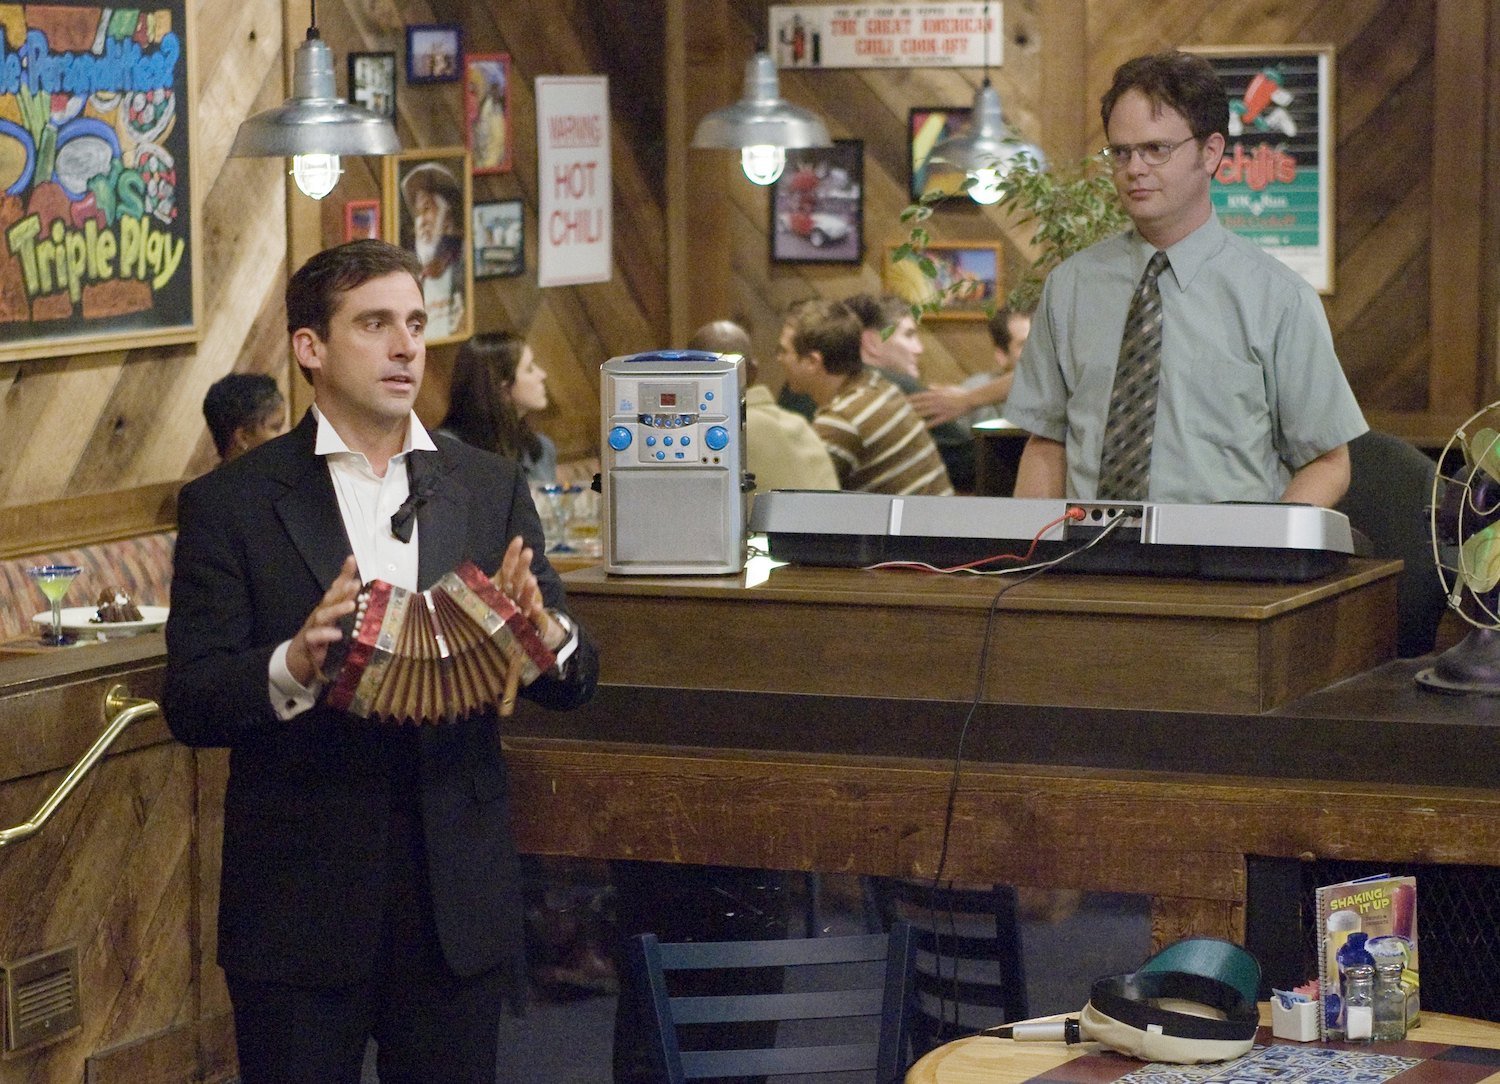 The Office The Dundies Steve Carell as Michael Scott and Rainn Wilson as Dwight Schrute